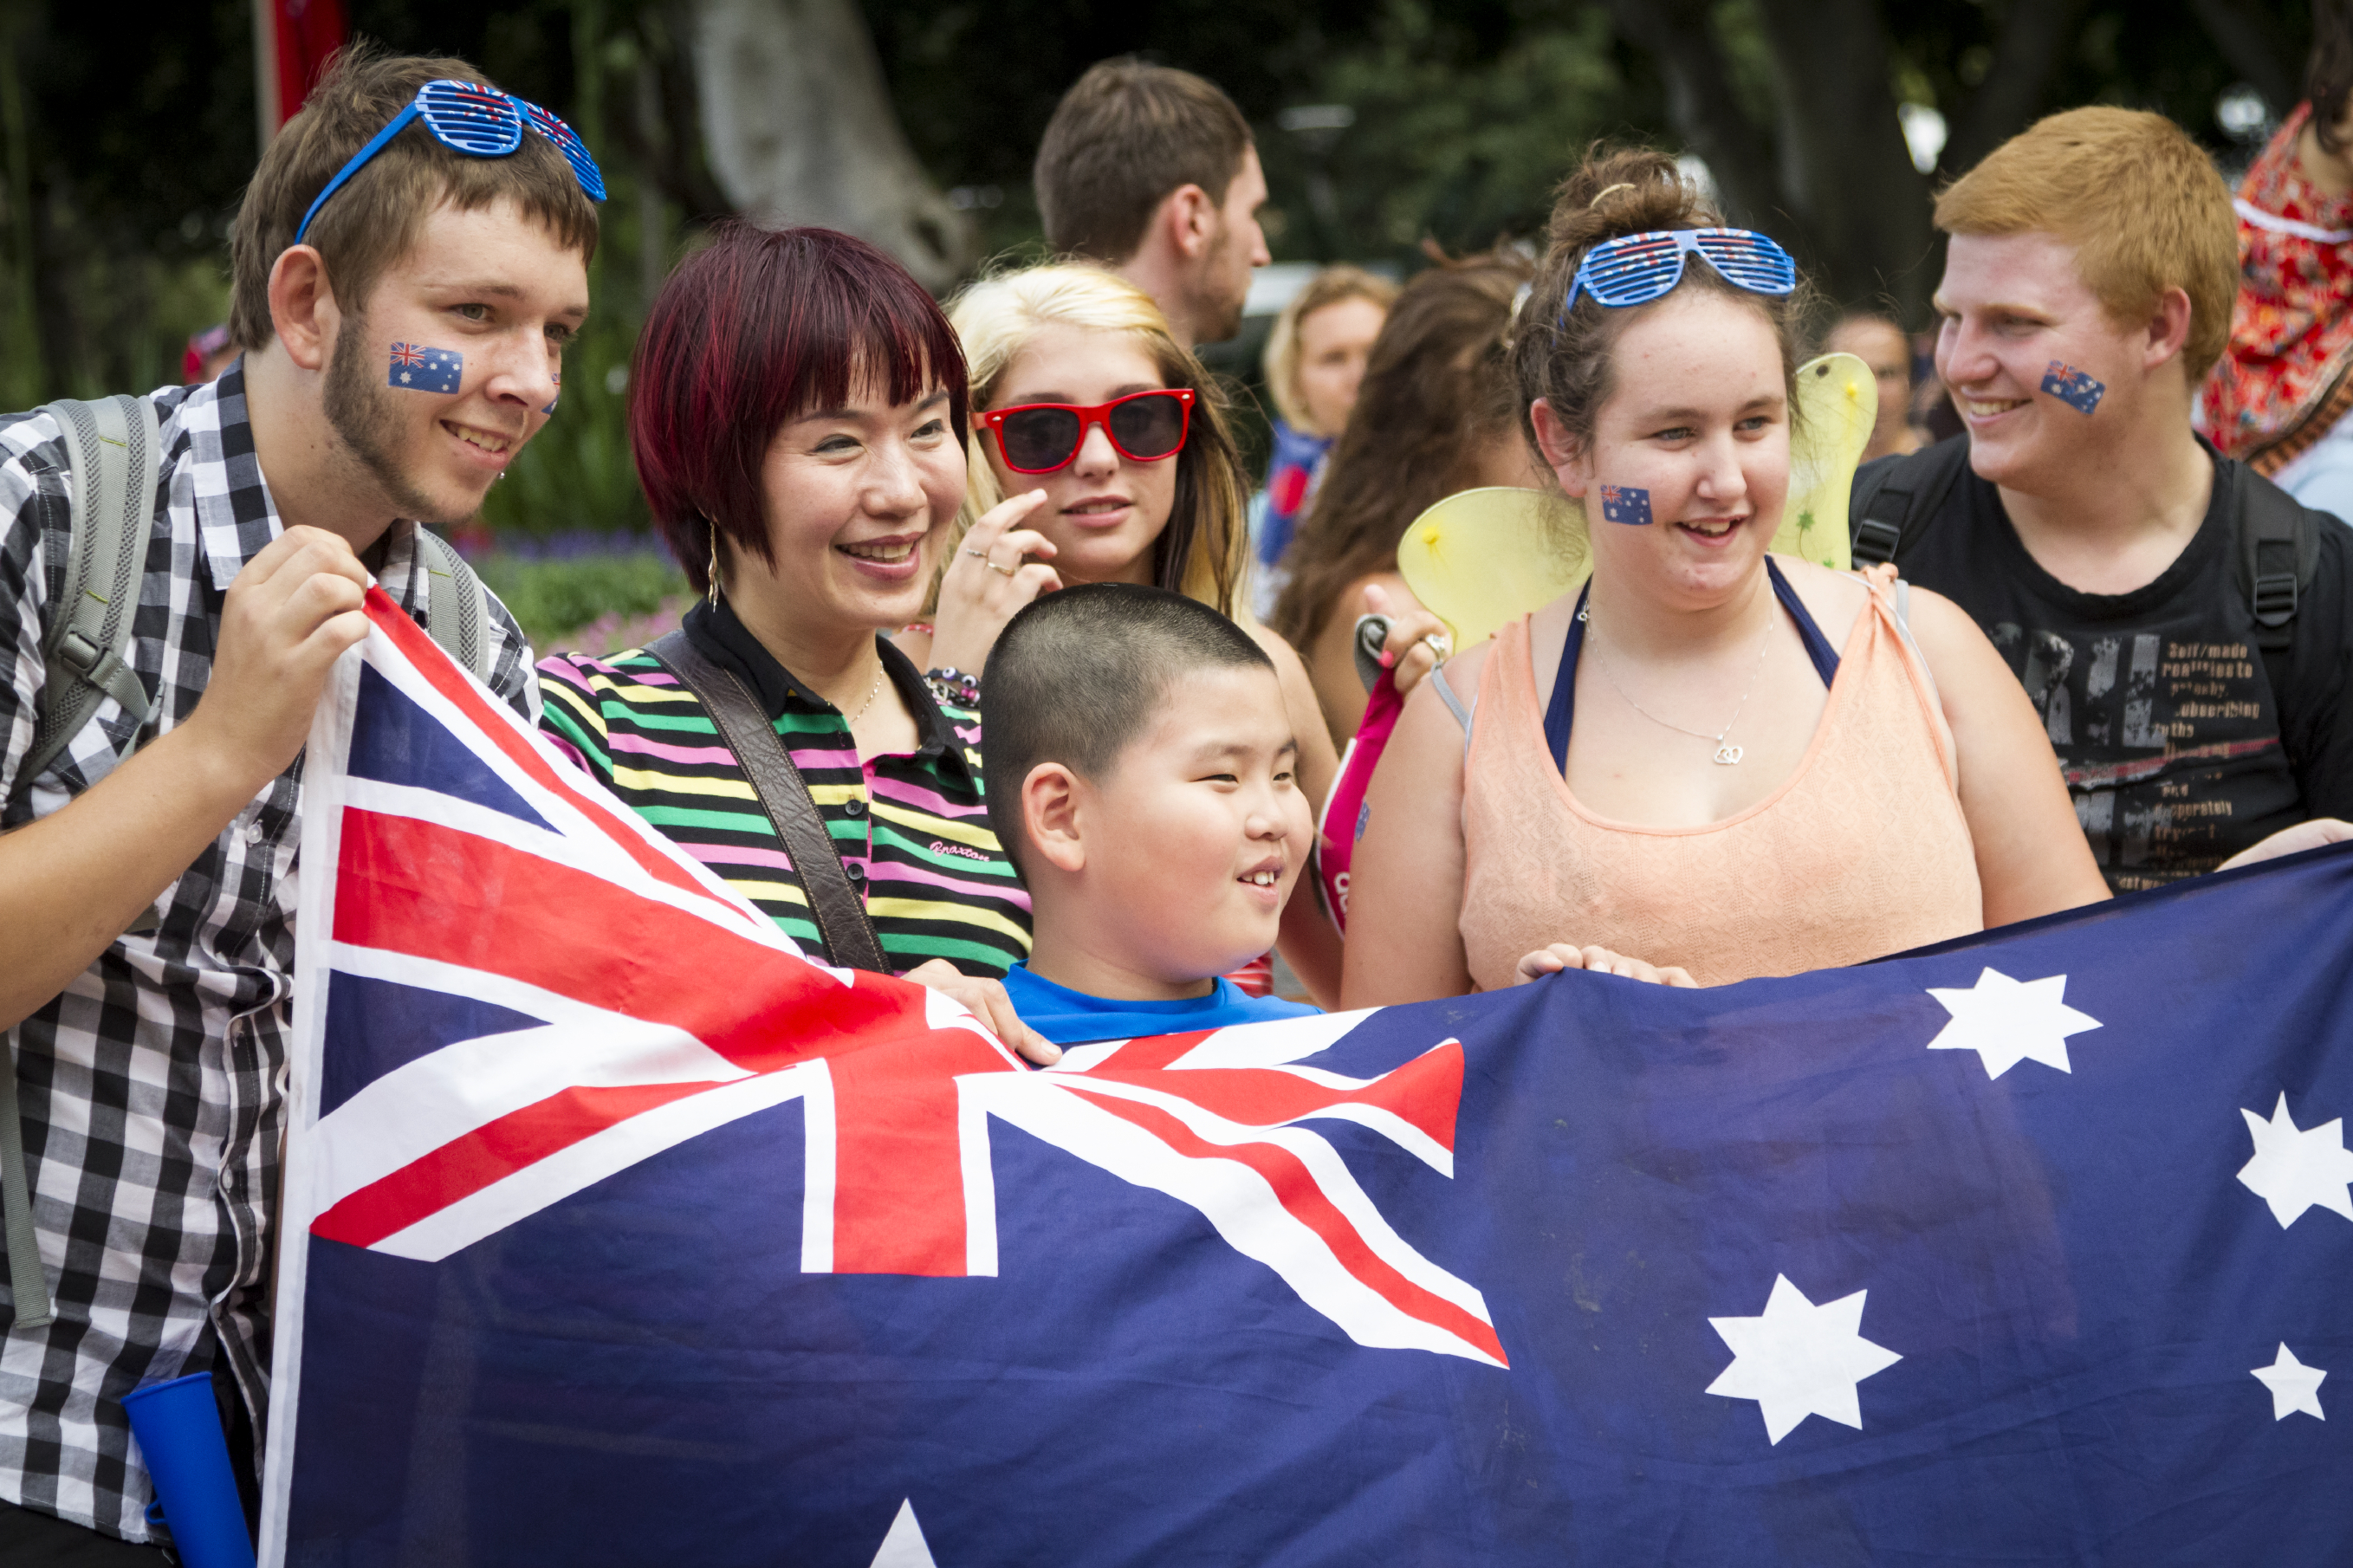 Học hỏi kiến thức về văn hóa và nền kinh tế của đất nước mà bạn đến – Du lịch Úc cần chuẩn bị những gì?